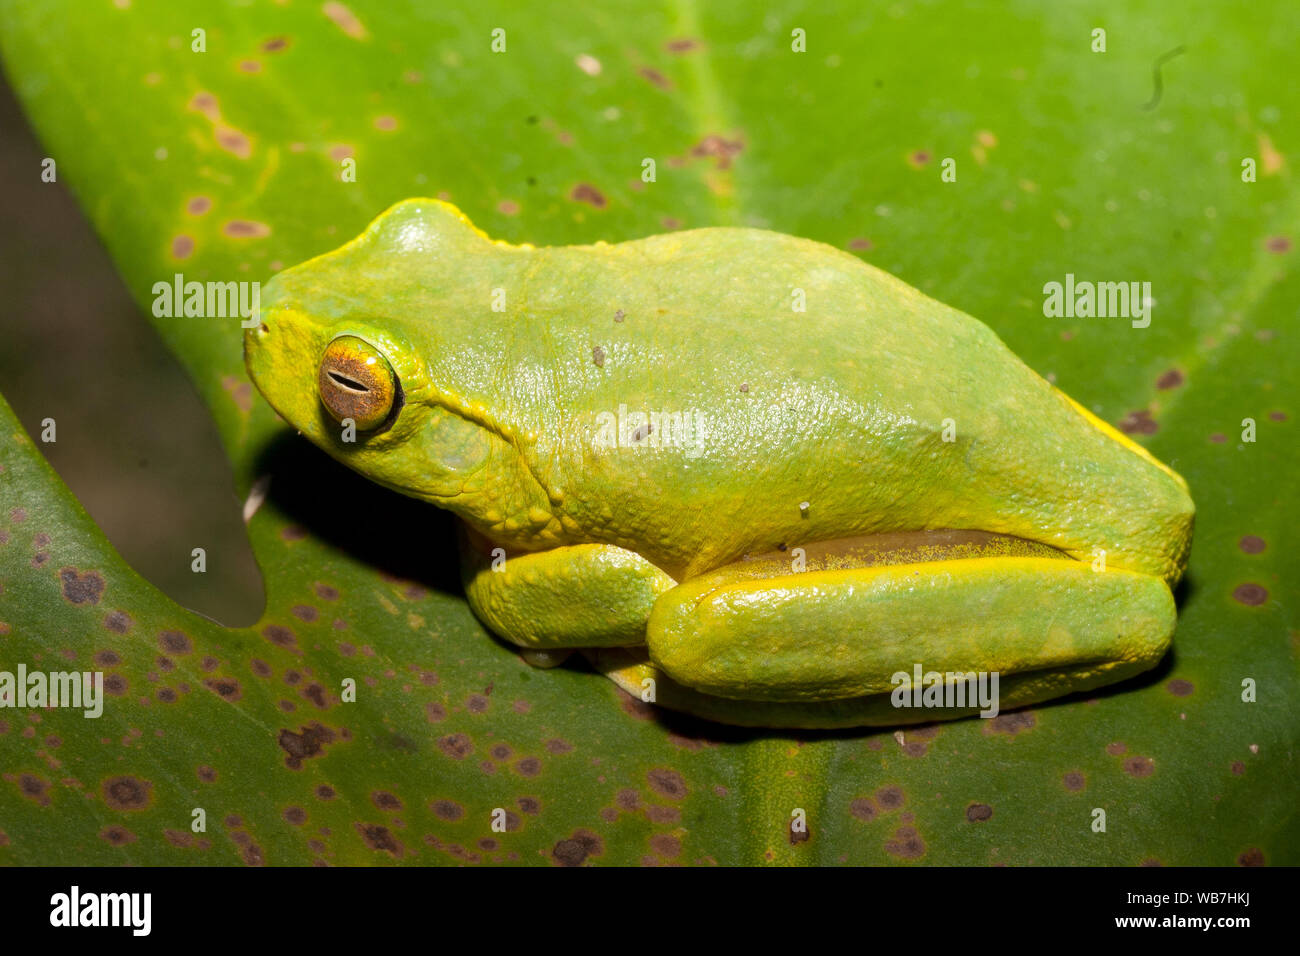 Australian Dainty Green Tree Frog Stock Photo